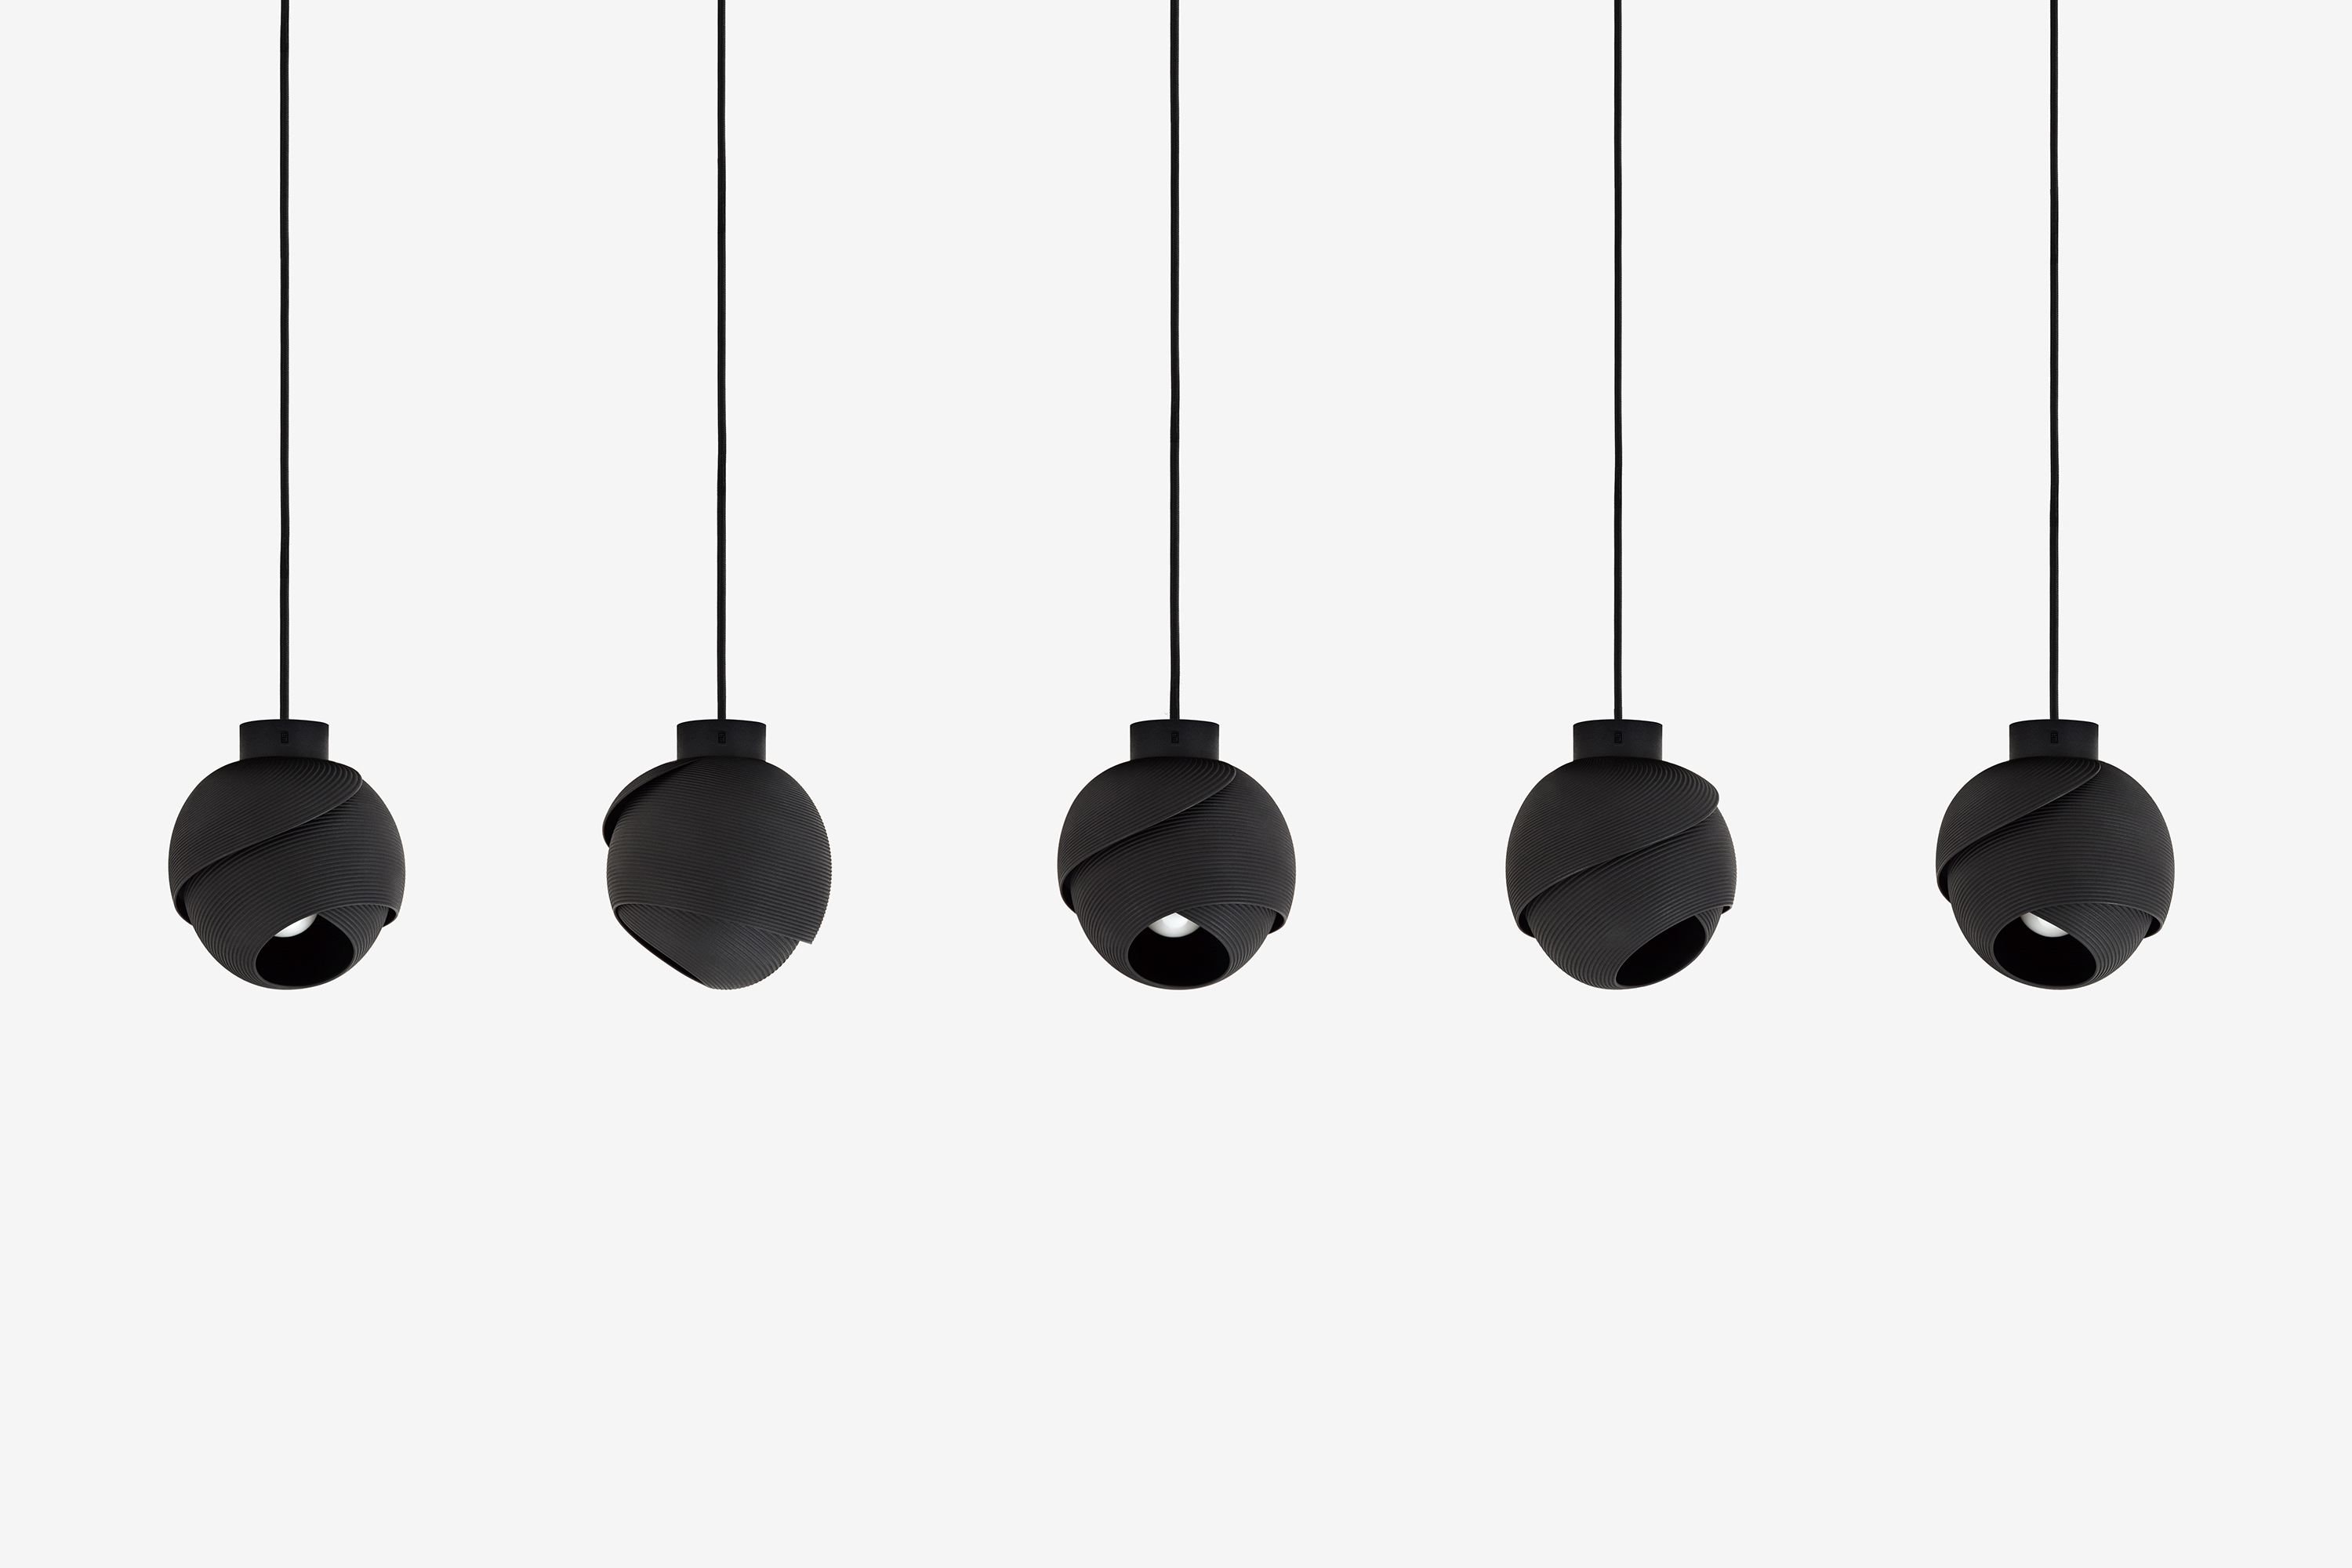 Fold Pendant Lamps, Design by Matthijs Kok for Freshfiber